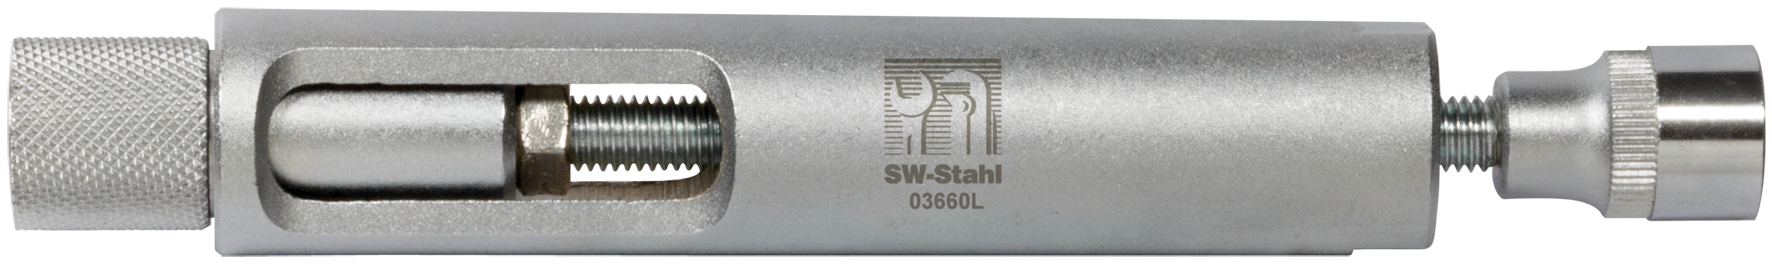 SWSTAHL Glow plug removal tool 03660L